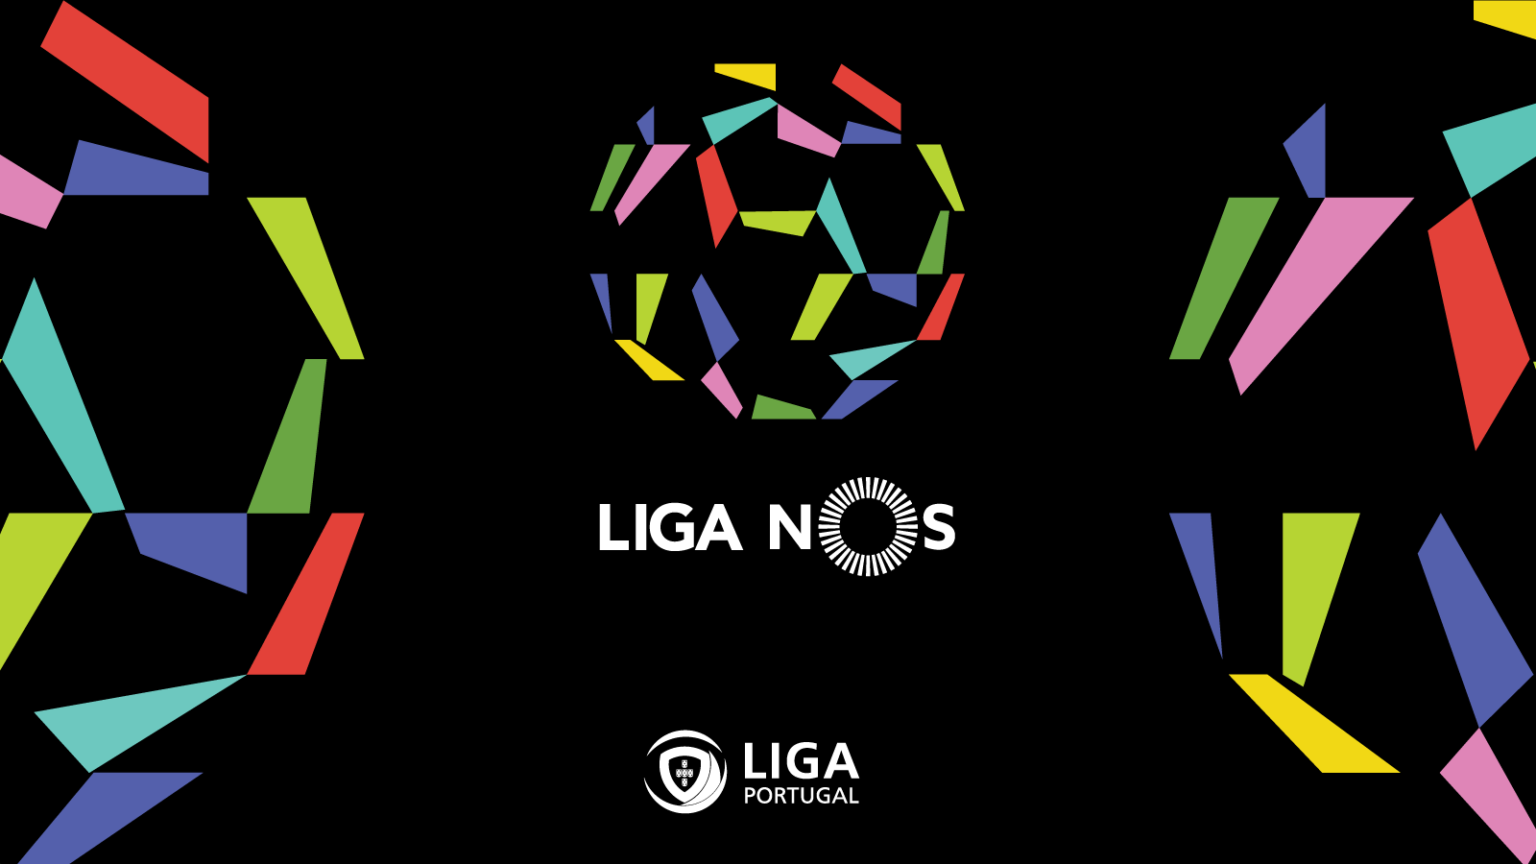 How to Watch 'Liga NOS' Online Live Stream Primeira Division